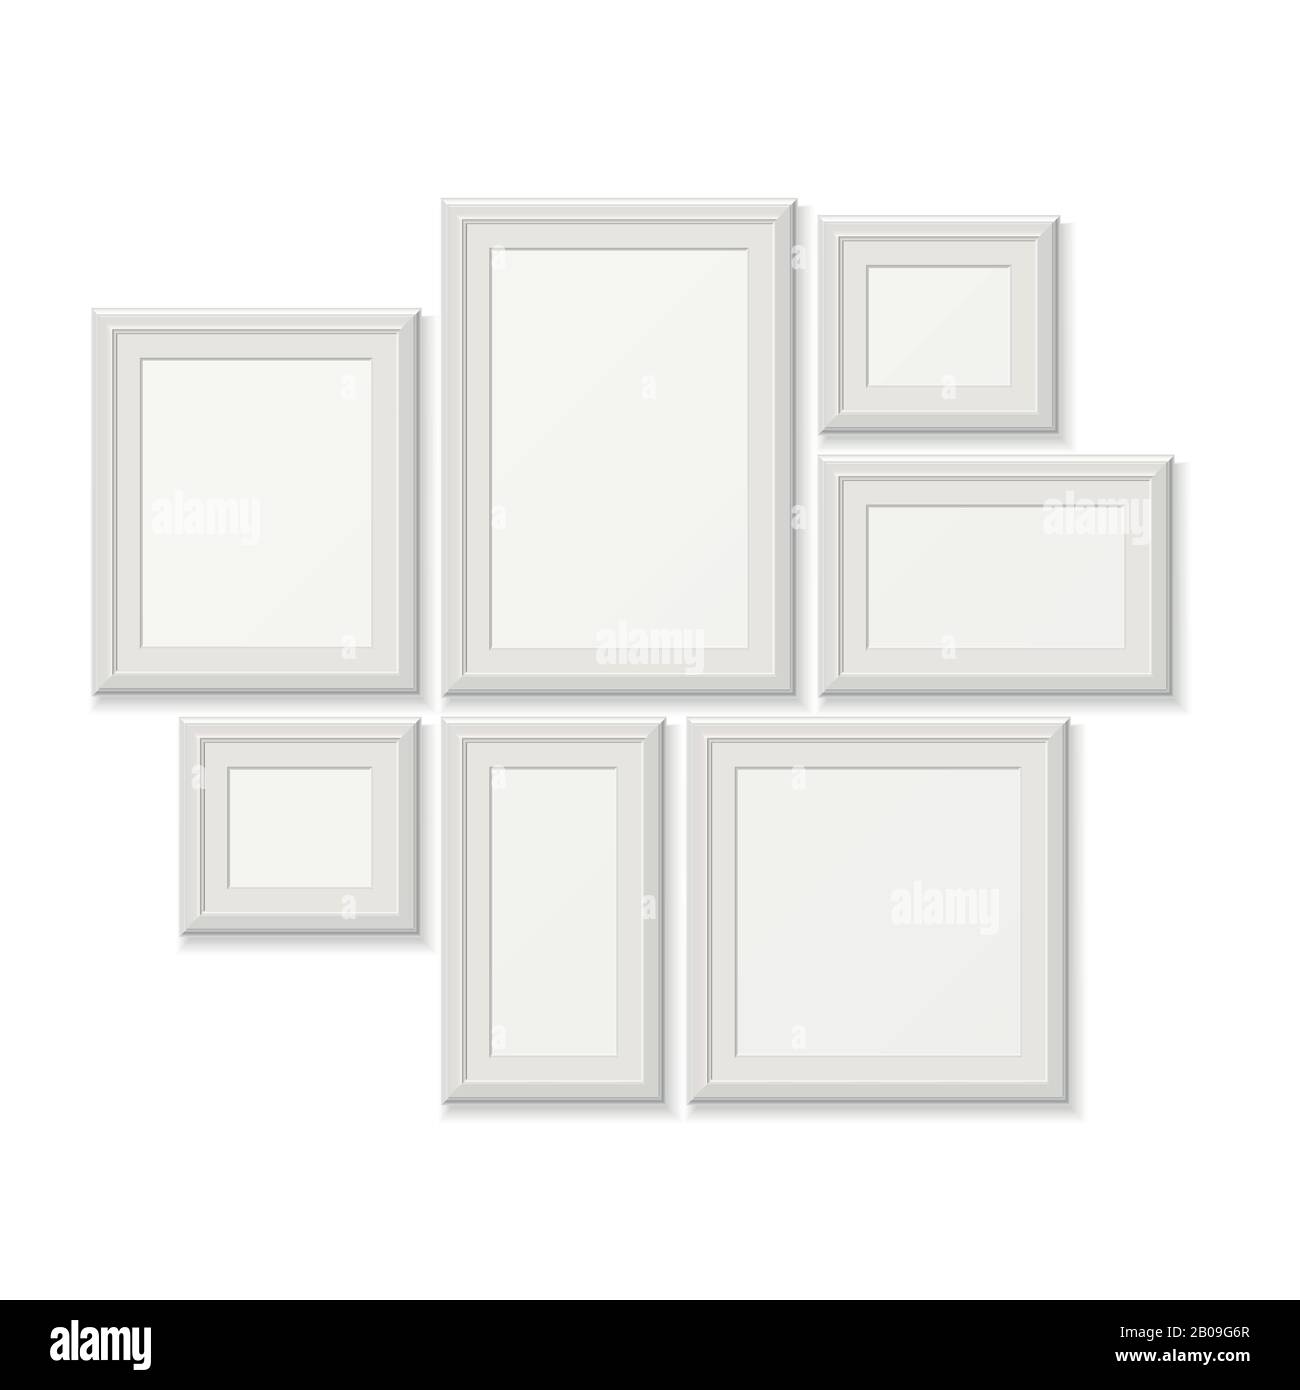 Cuadros blancos vacíos de la pocture, bordes 3d de la foto aislados en la  pared blanca. Conjunto de marcos para fotos, galería con ilustración de  marcos de fotografías Imagen Vector de stock 